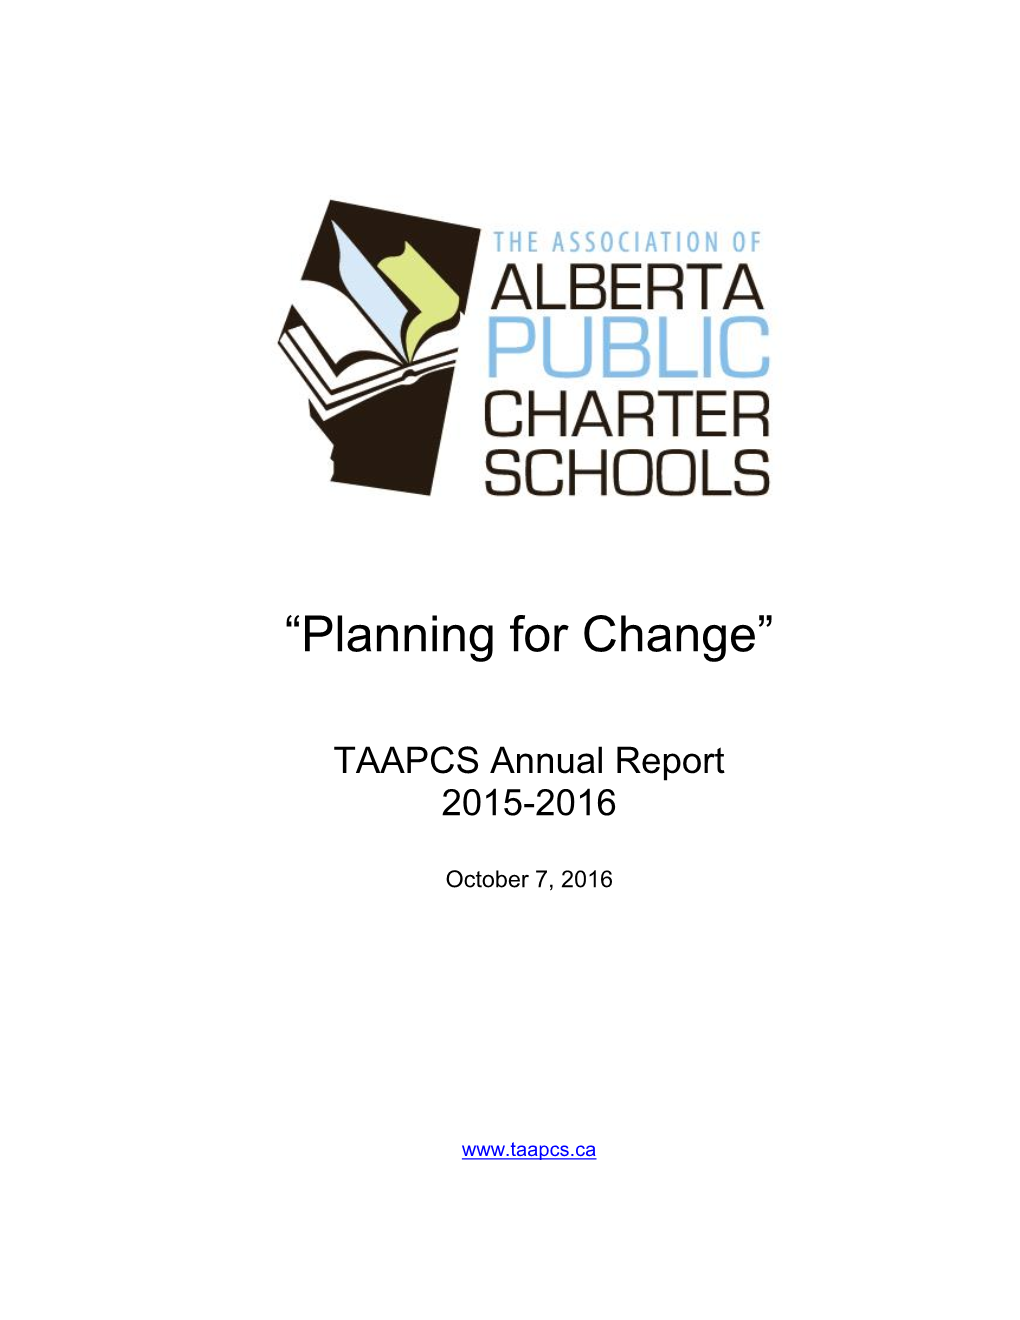 TAAPCS Annual Report October 2016